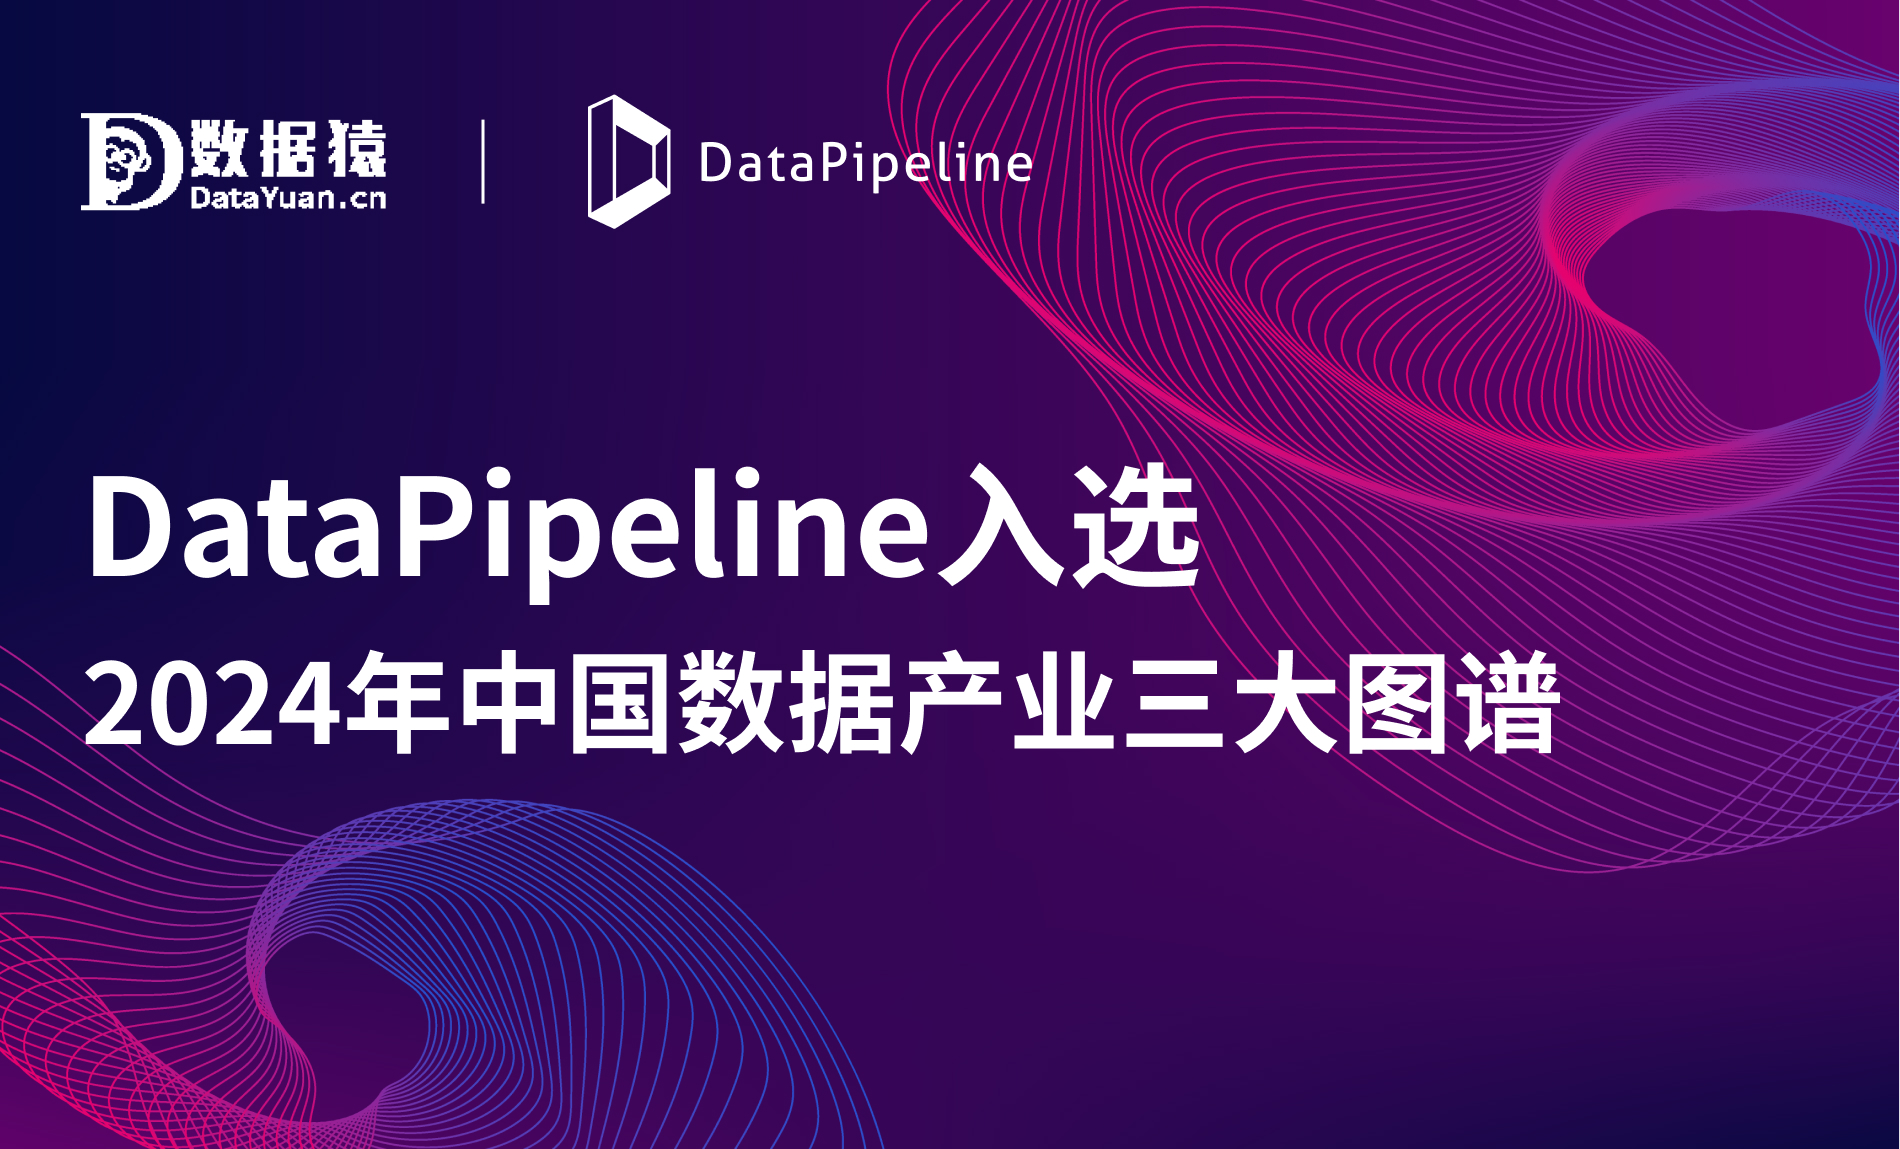 2024年中国数据产业图谱发布，DataPipeline入选三大领域